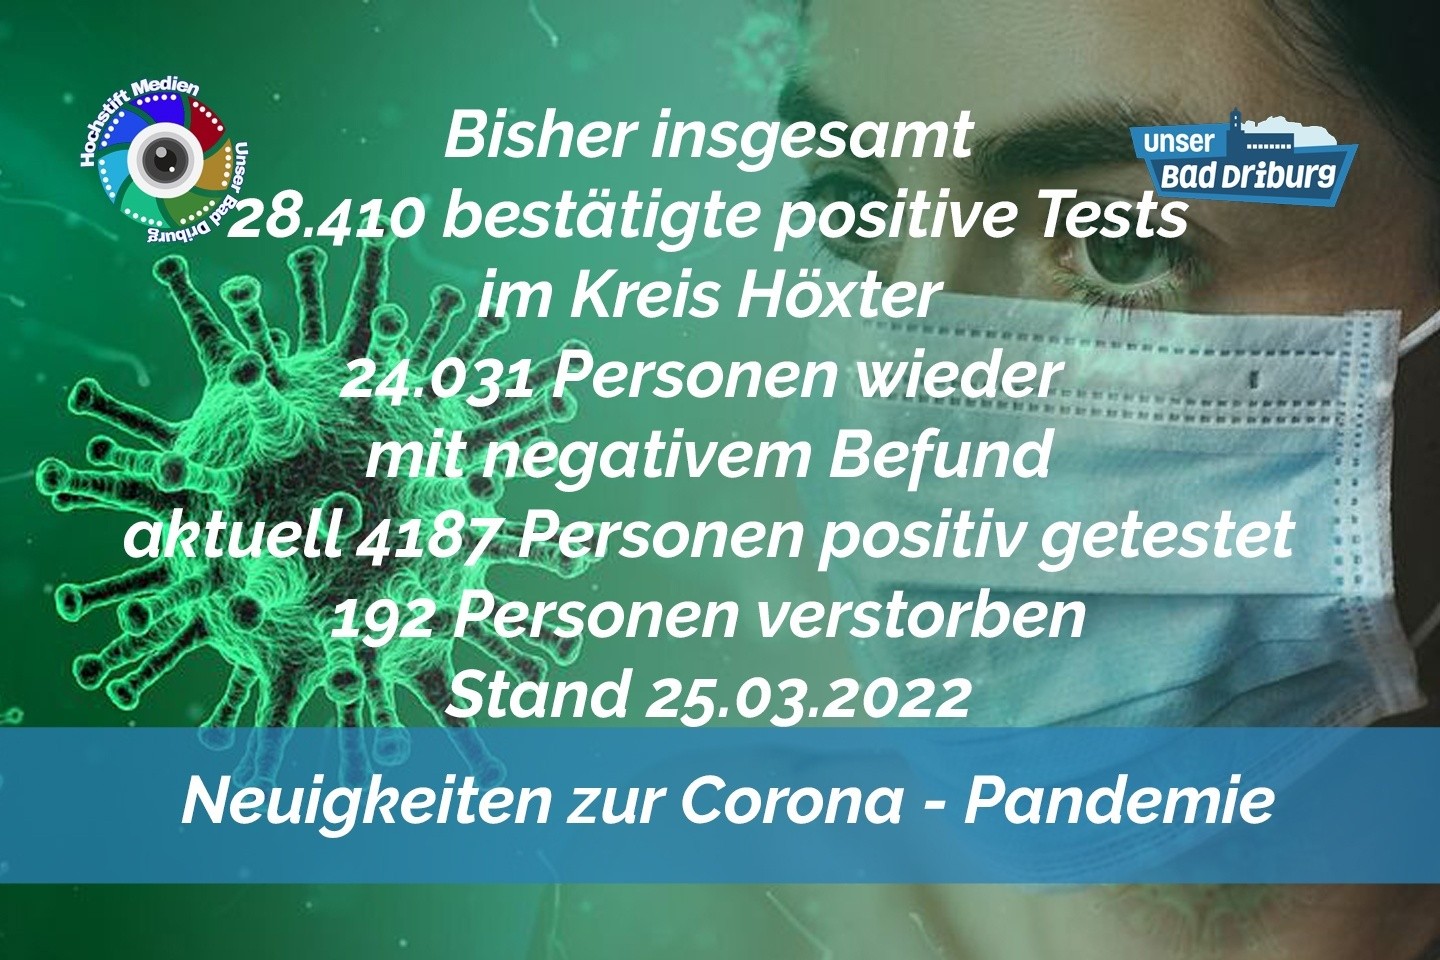 Update 25. März 2022: 445 weitere amtlich positive Tests im Kreis Höxter